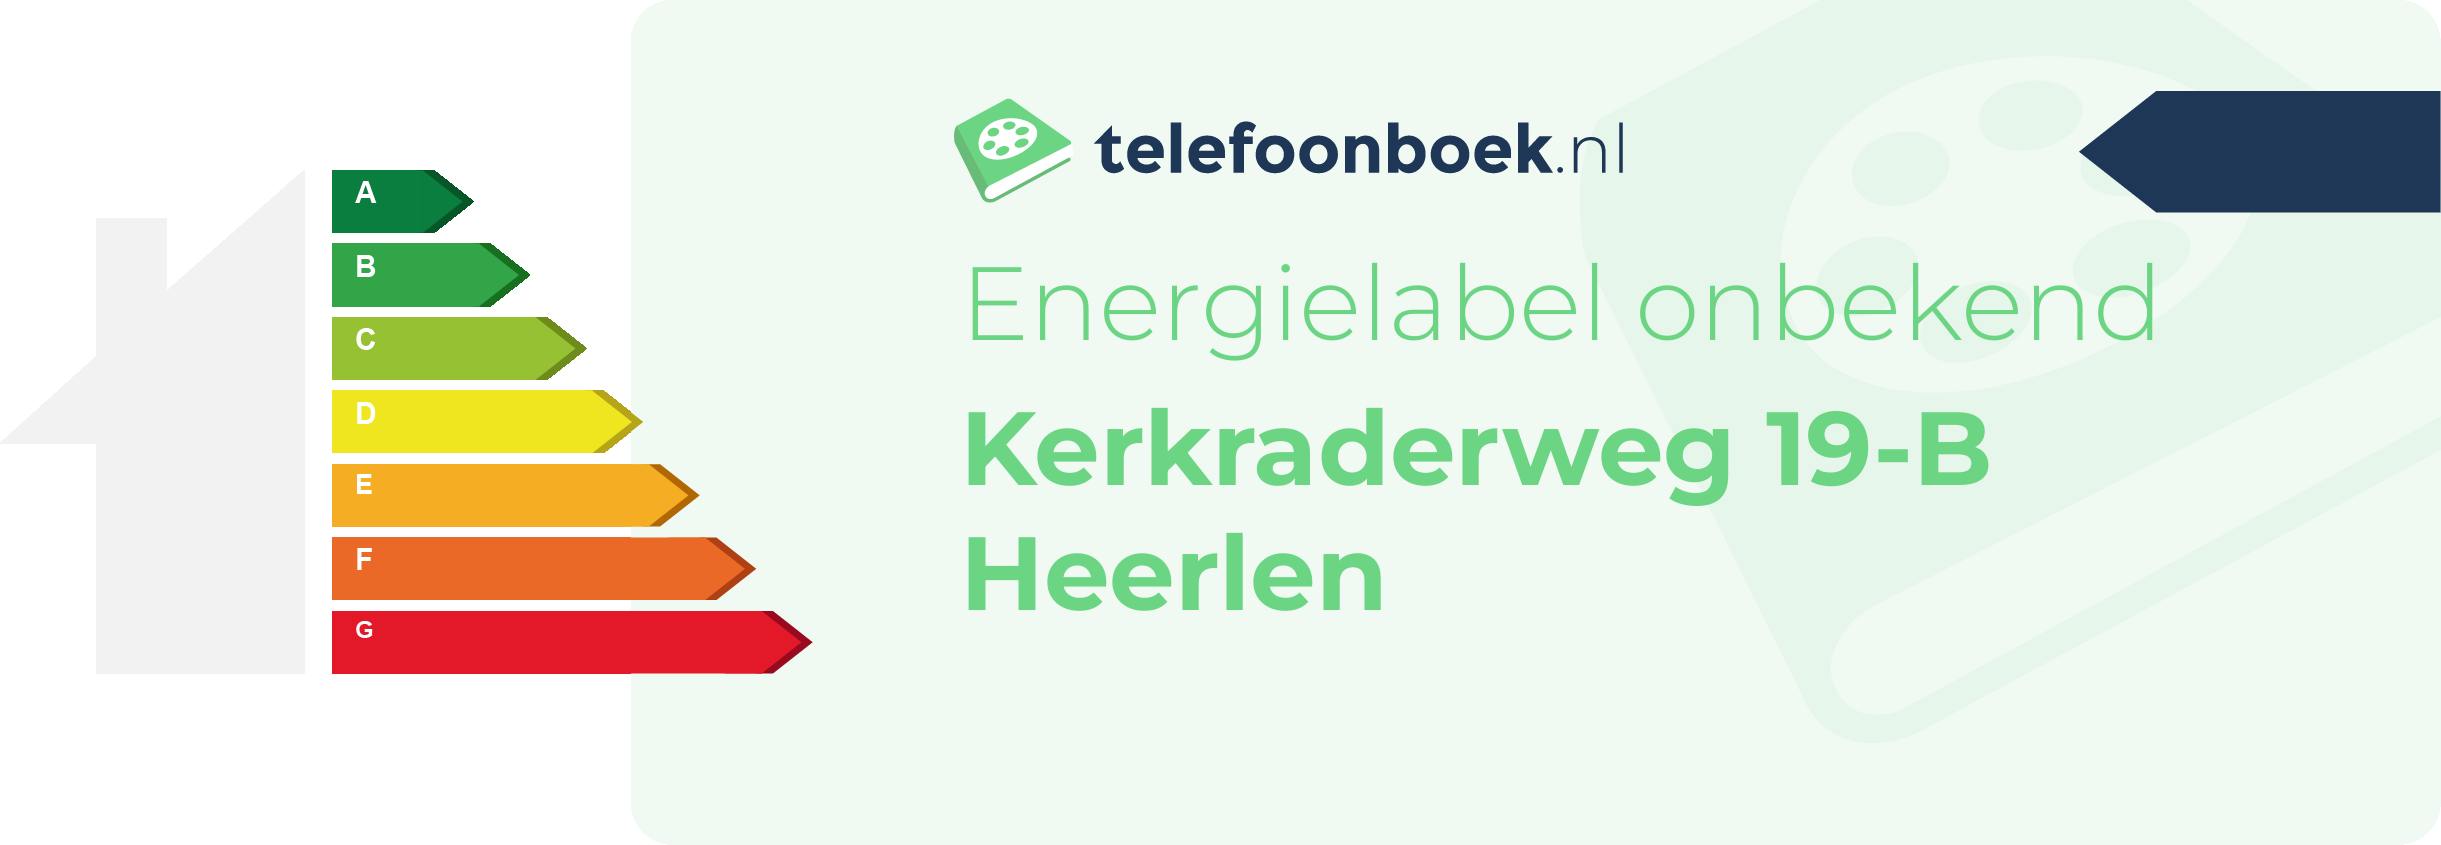 Energielabel Kerkraderweg 19-B Heerlen